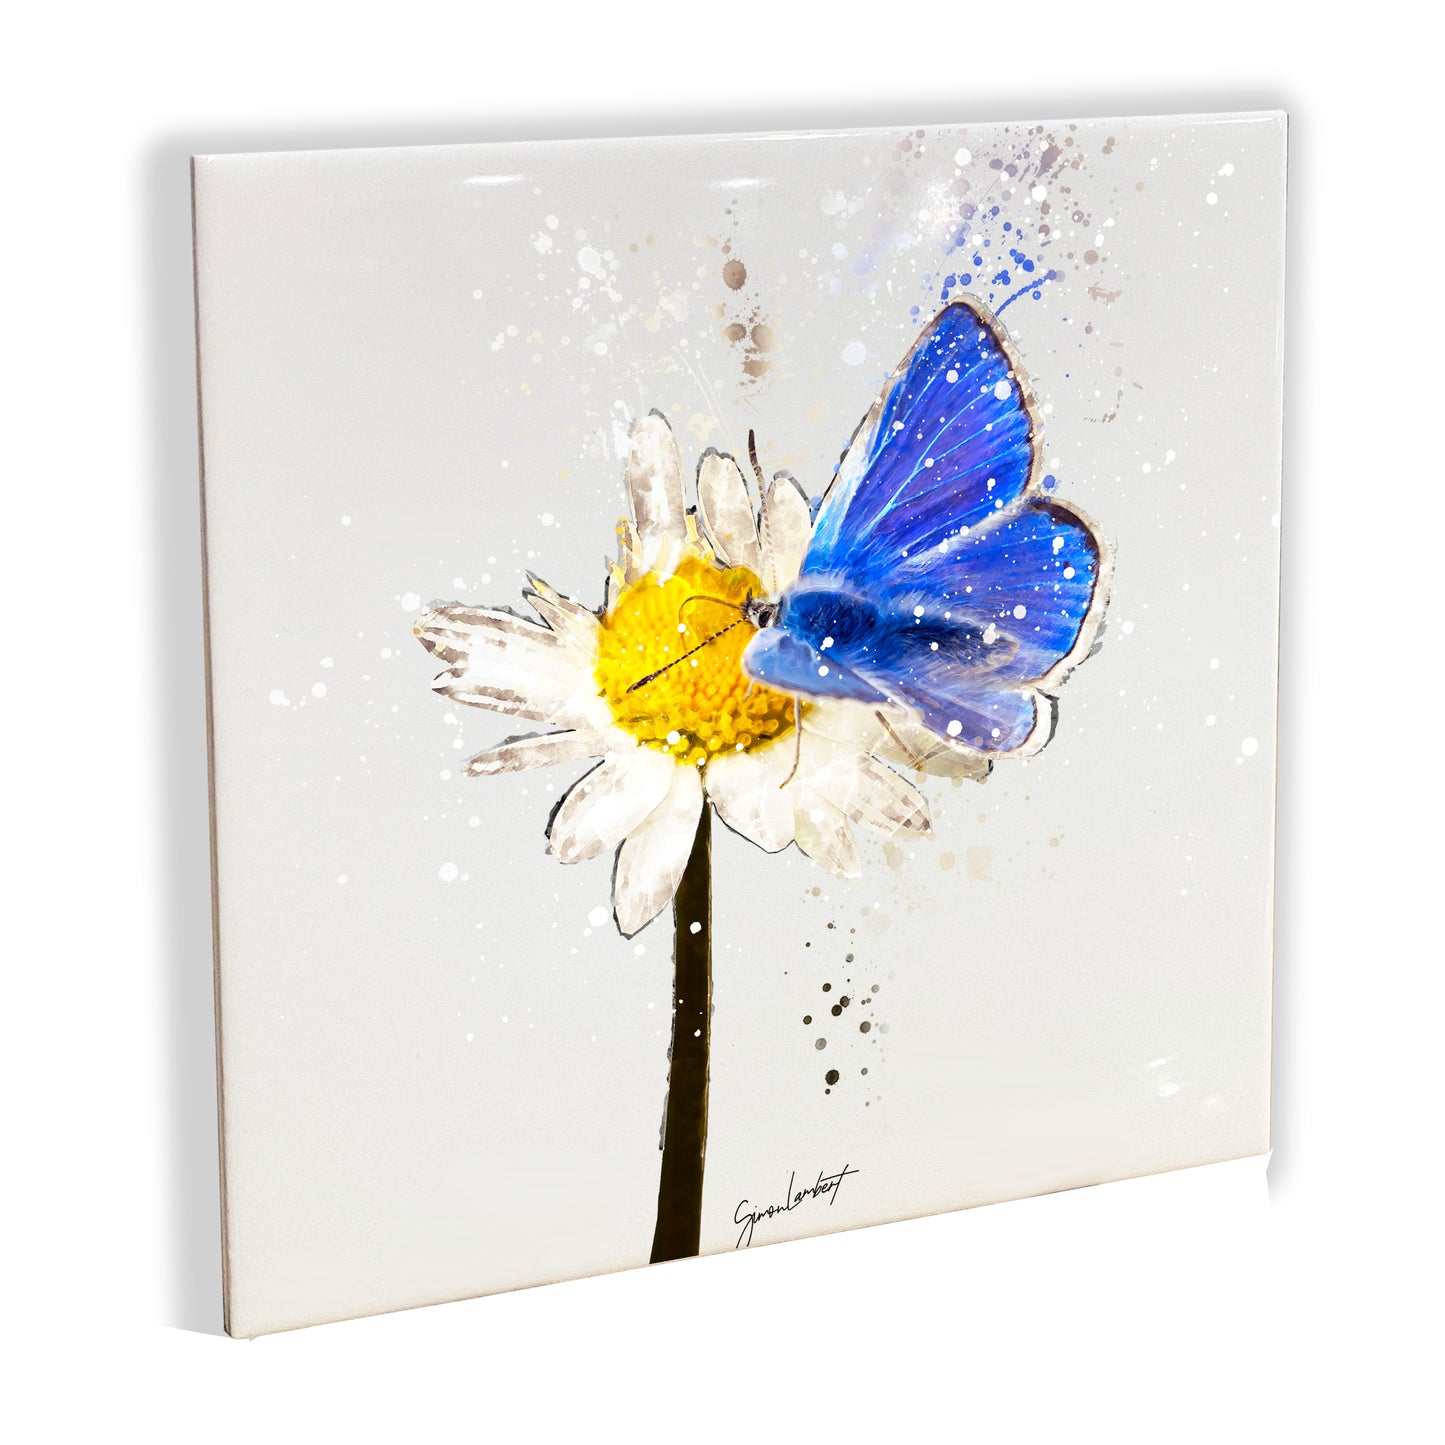 Blue Butterfly Portrait Brush Splatter Style Artwork - Framed CERAMIC TILE Art